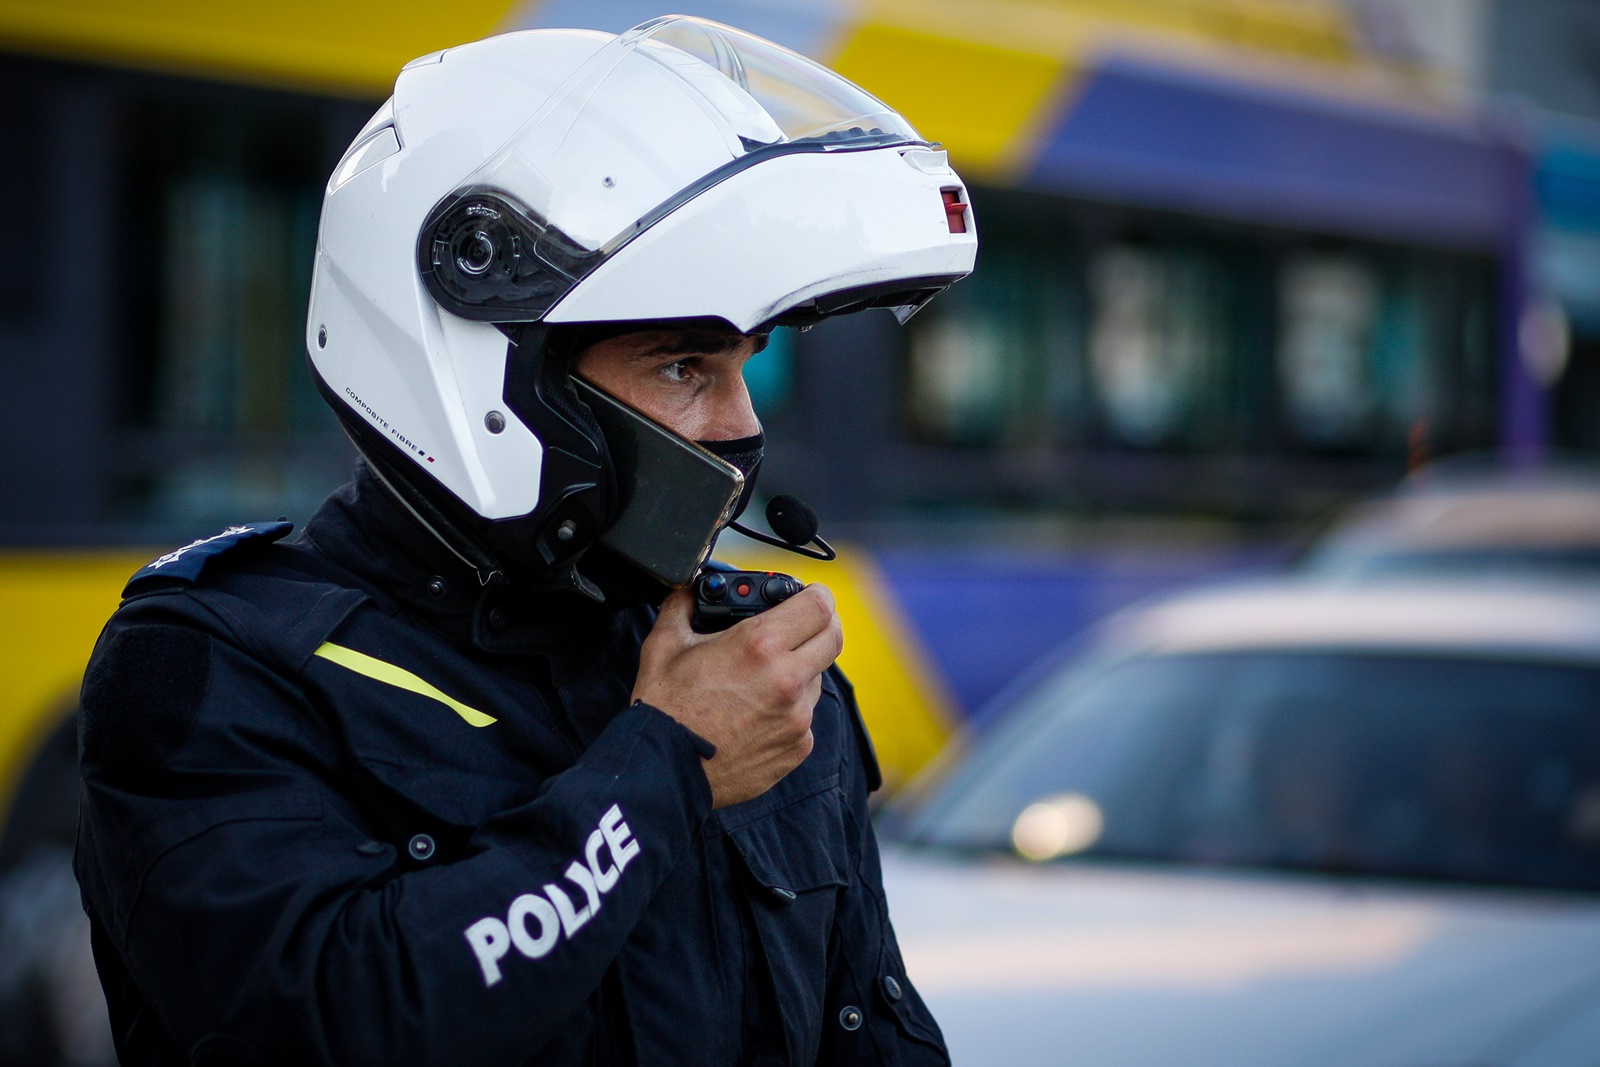 Κάμερες στους αστυνομικούς: Νέο βοηθητικό εργαλείο για την ΕΛ.ΑΣ